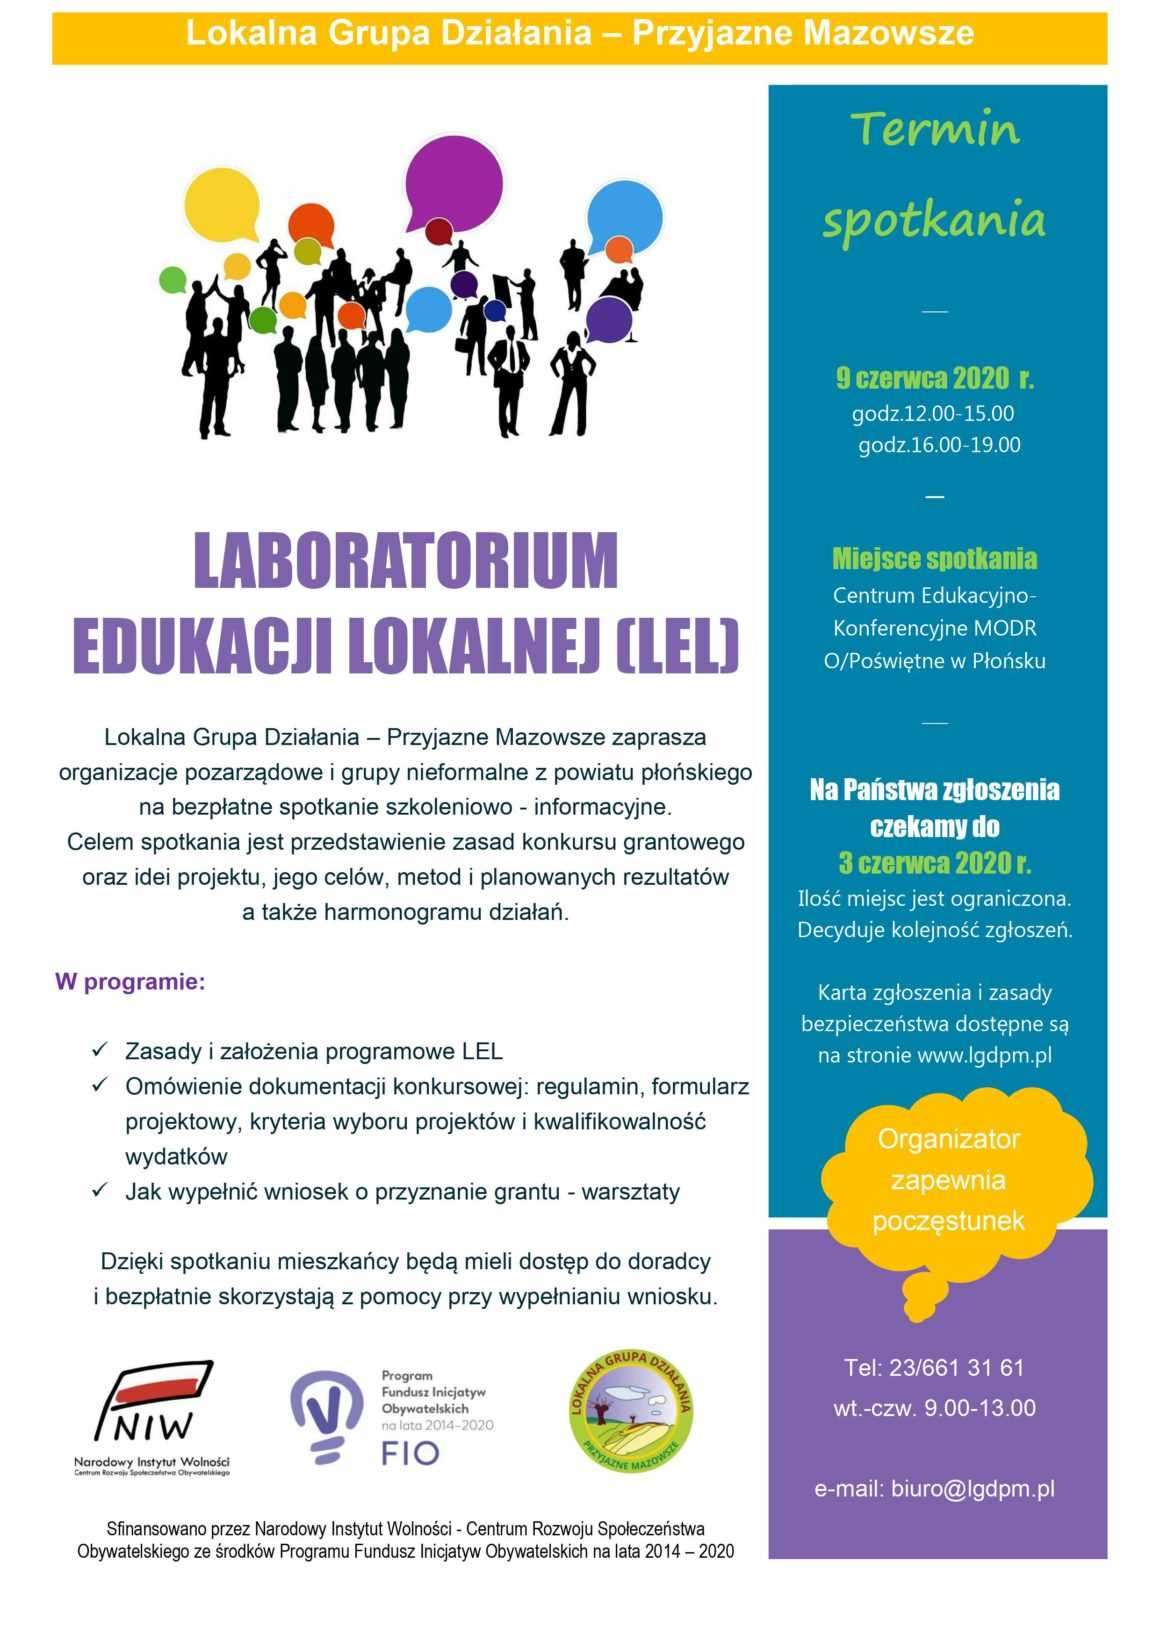 Laboratorium Edukacji Lokalnej – LGD – Przyjazne Mazowsze zaprasza na spotkanie